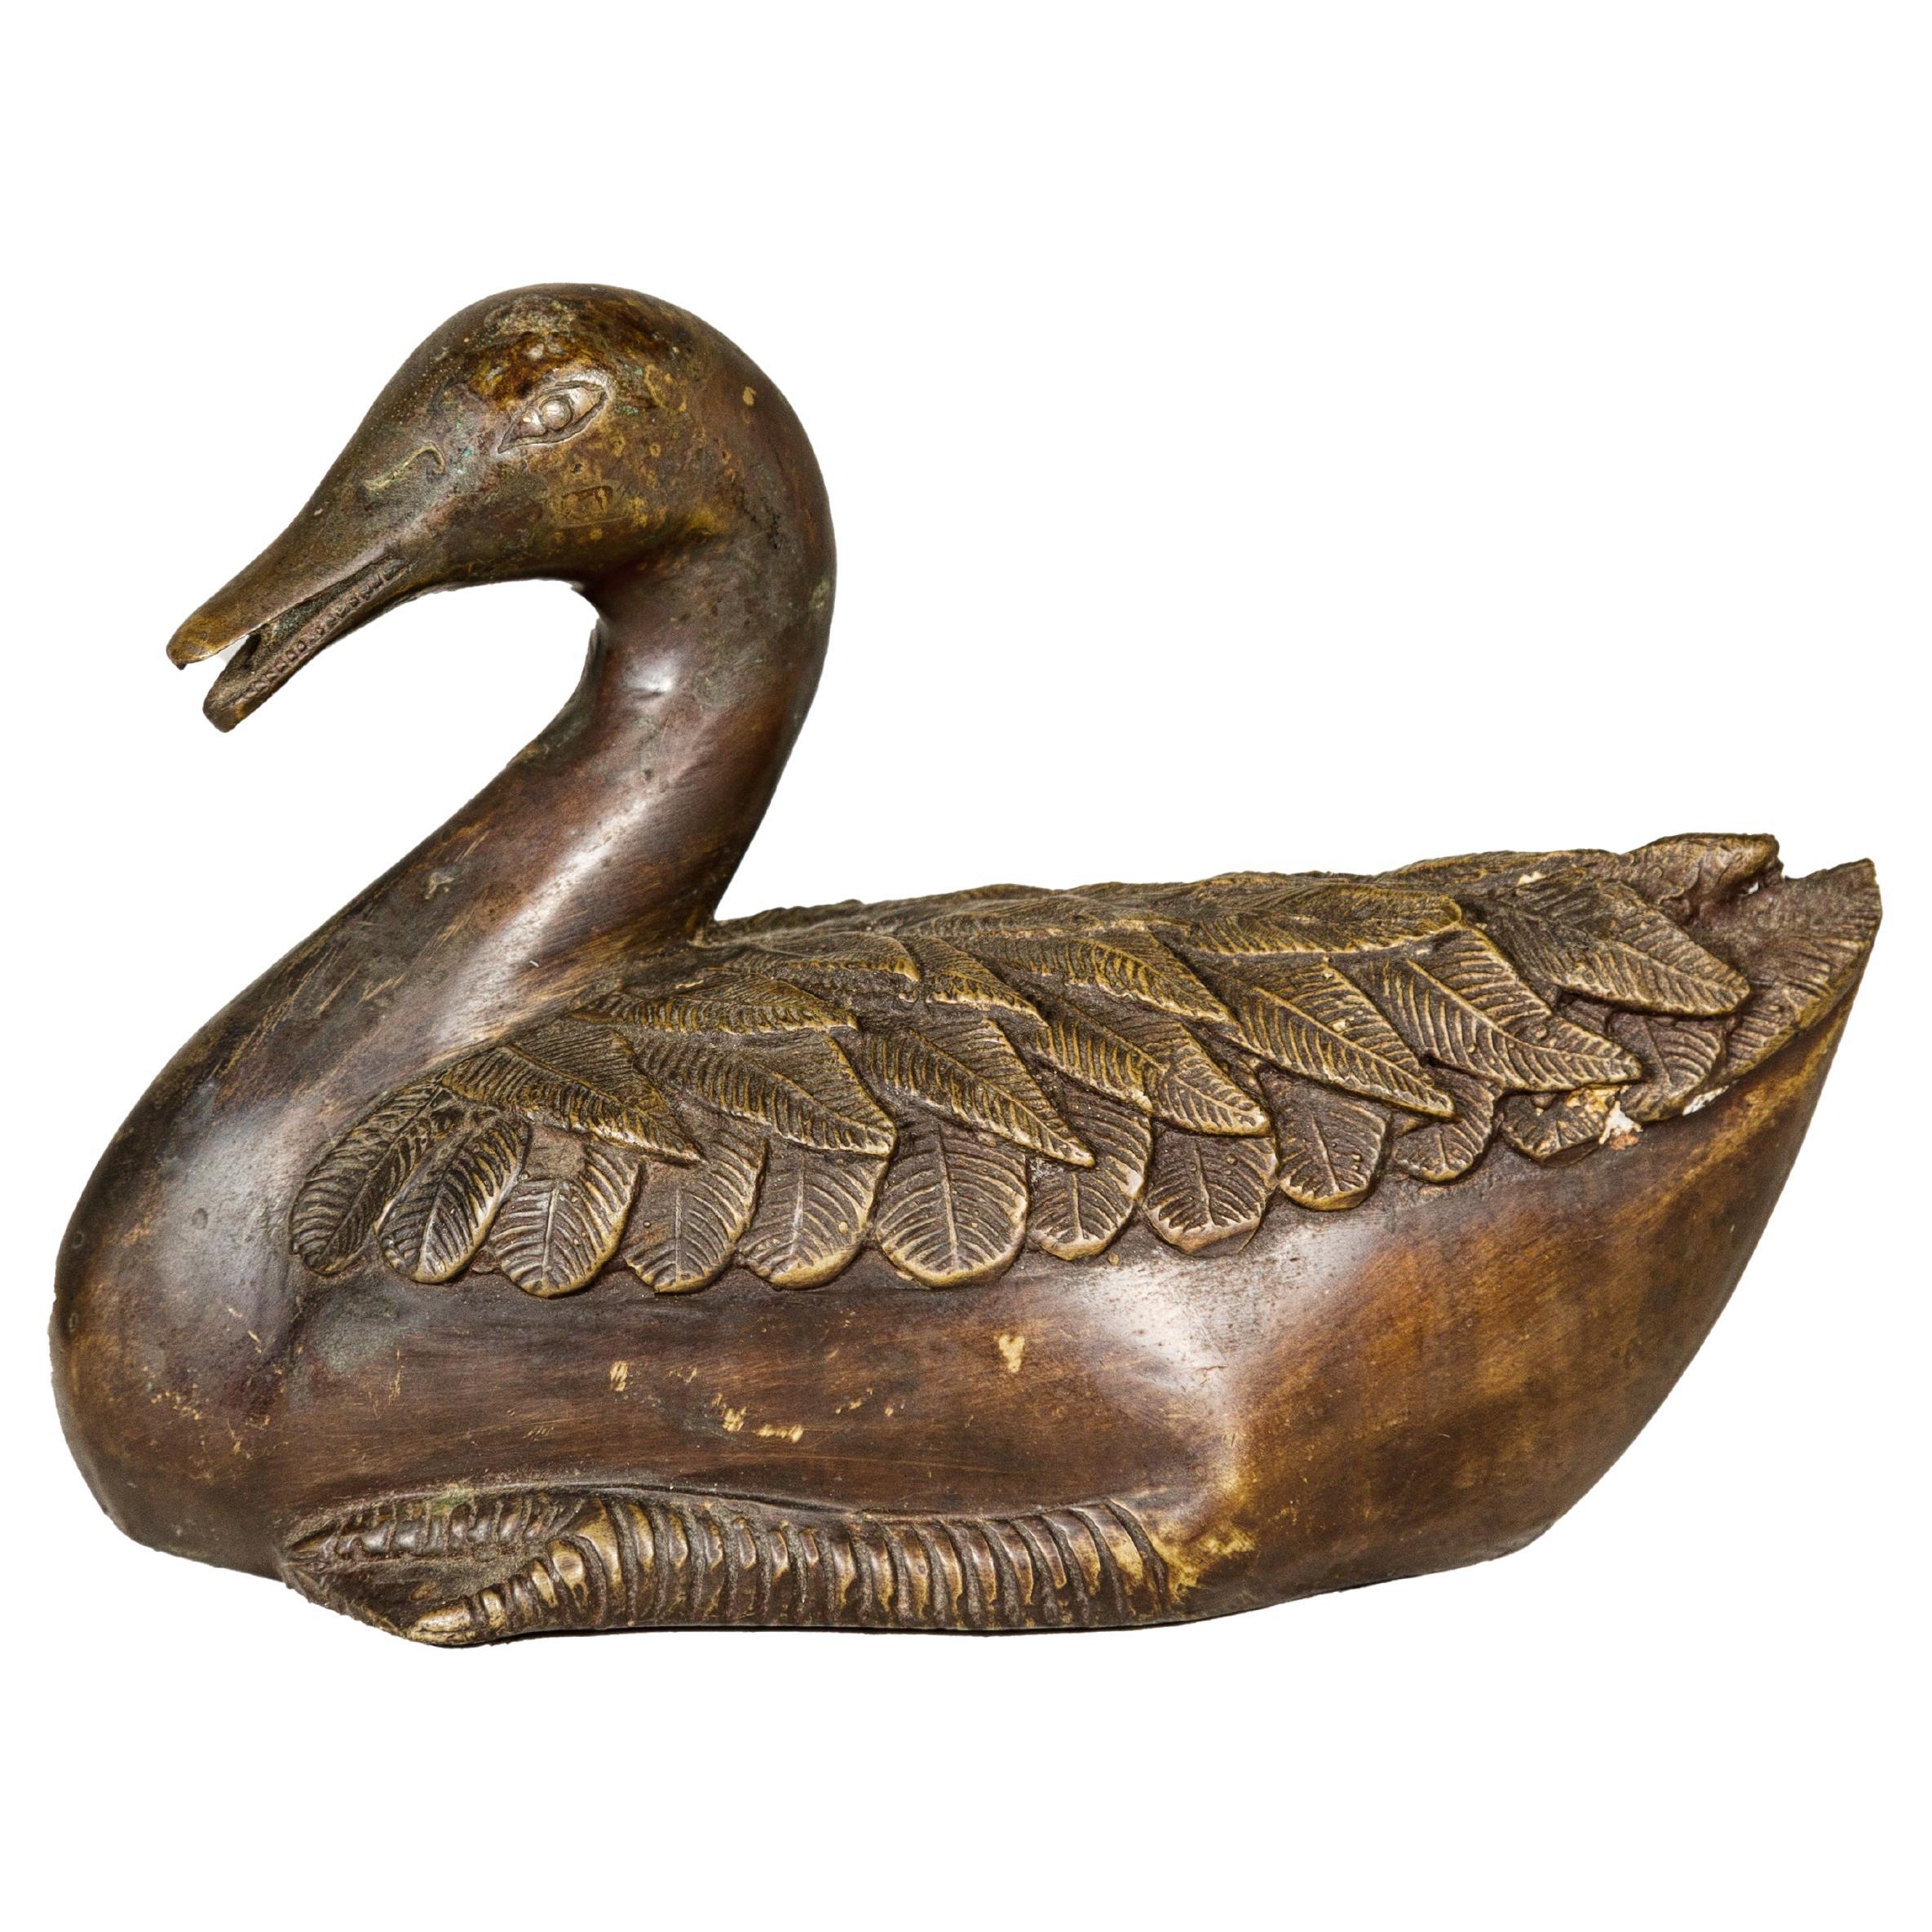 Statuette de canard vintage en bronze, cire perdue avec détails fins